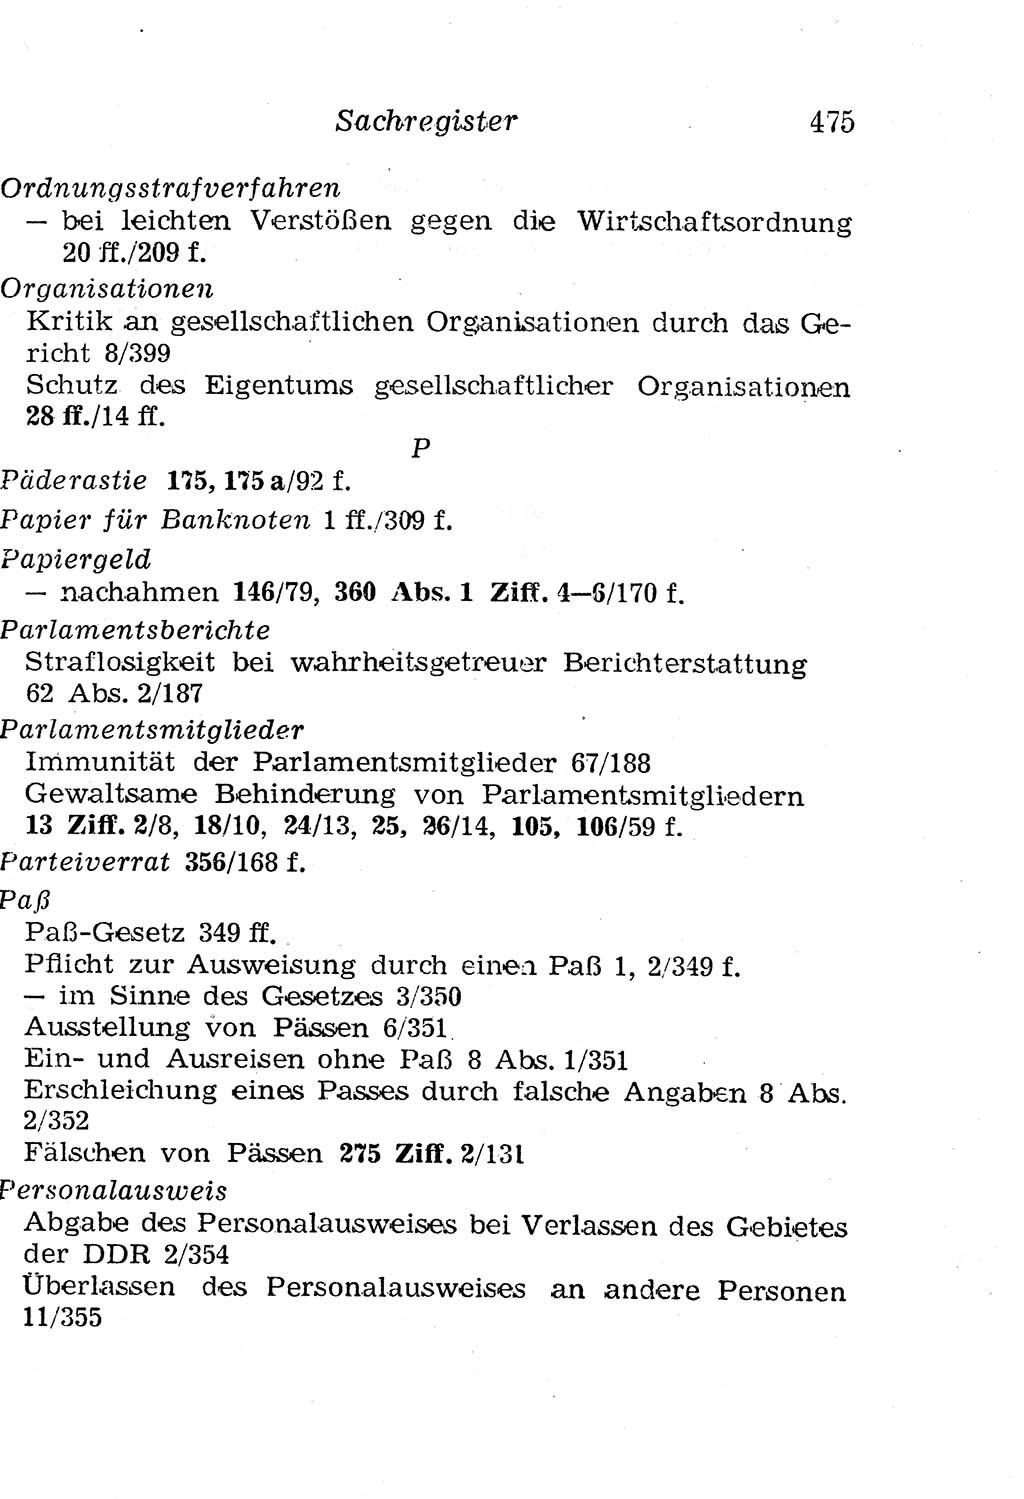 Strafgesetzbuch (StGB) und andere Strafgesetze [Deutsche Demokratische Republik (DDR)] 1958, Seite 475 (StGB Strafges. DDR 1958, S. 475)